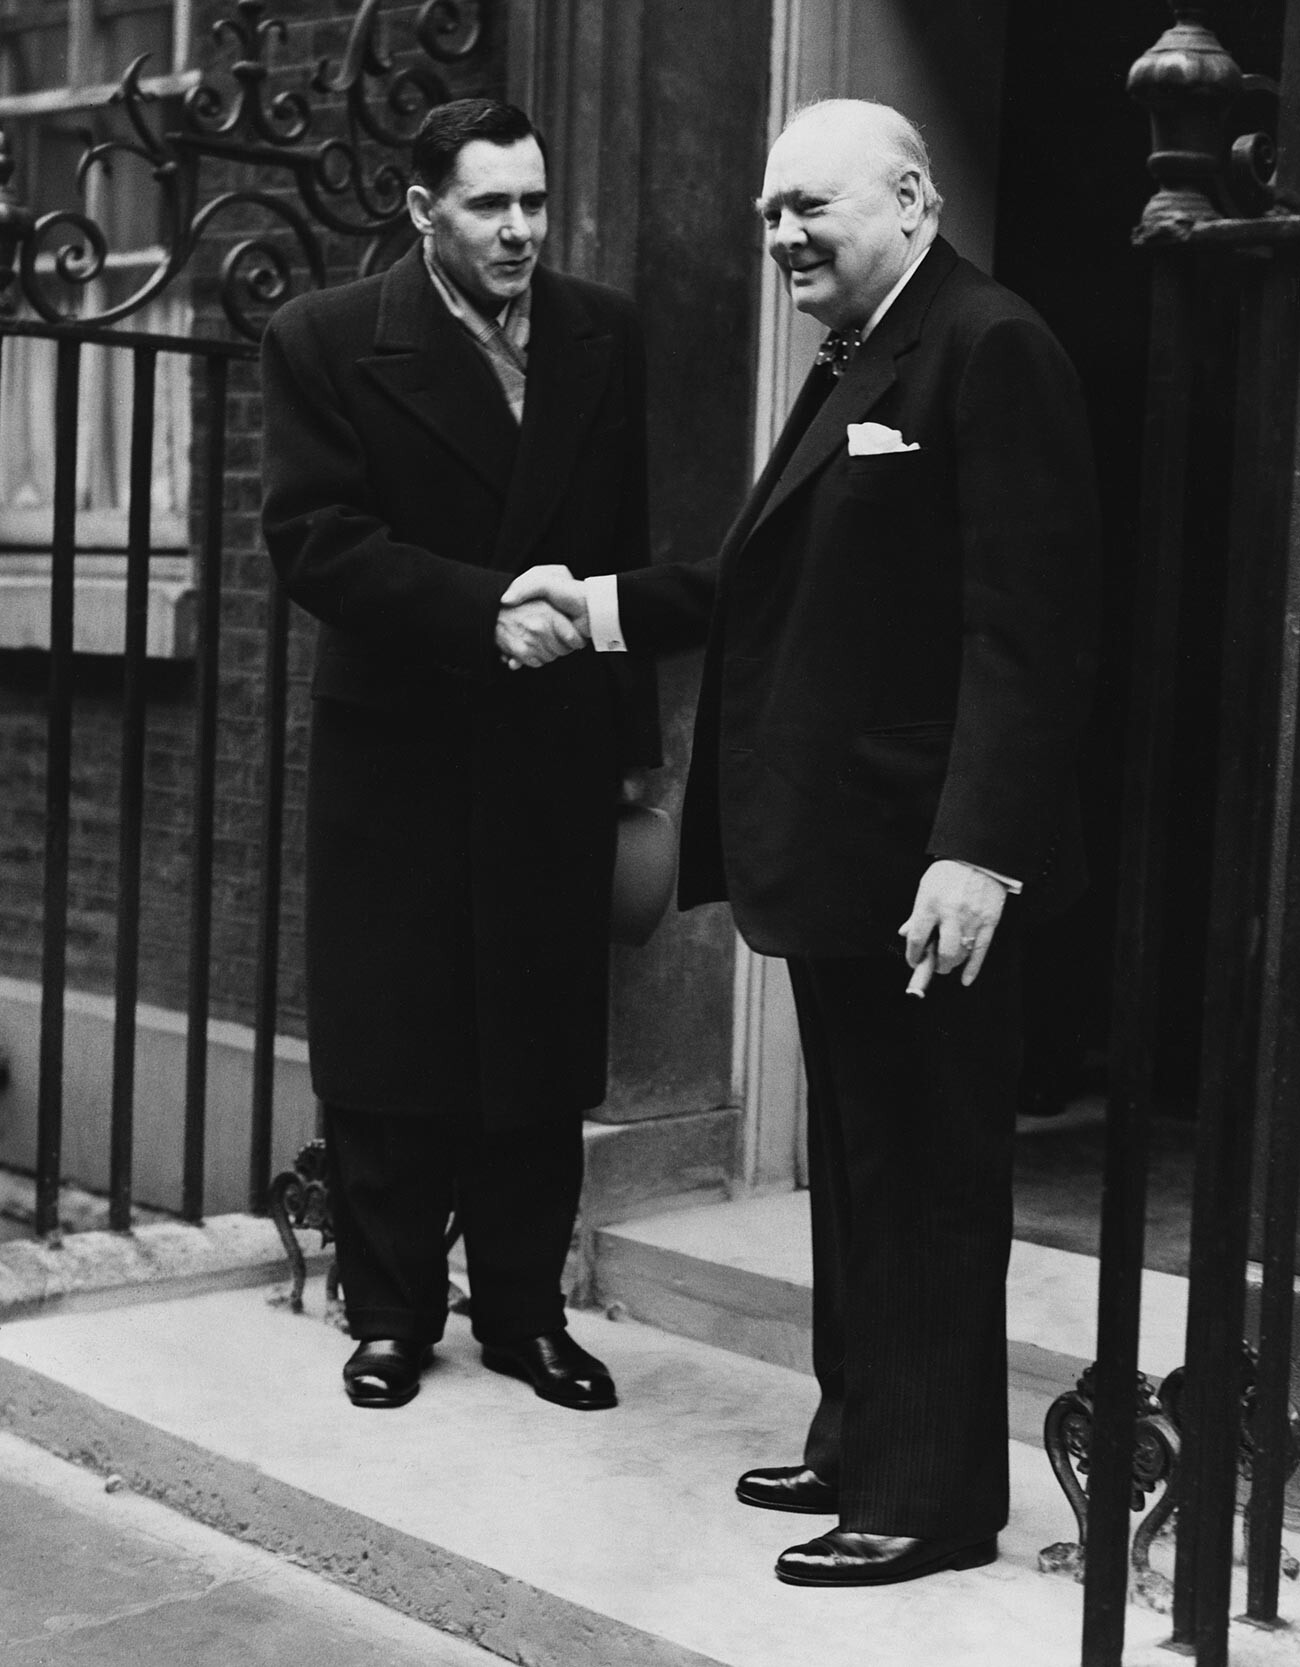 Andréi Gromiko, que se convirtió en embajador de Rusia en el Reino Unido en 1952, estrecha la mano del primer ministro conservador, Winston Churchill, frente al número 10 de Downing Street.